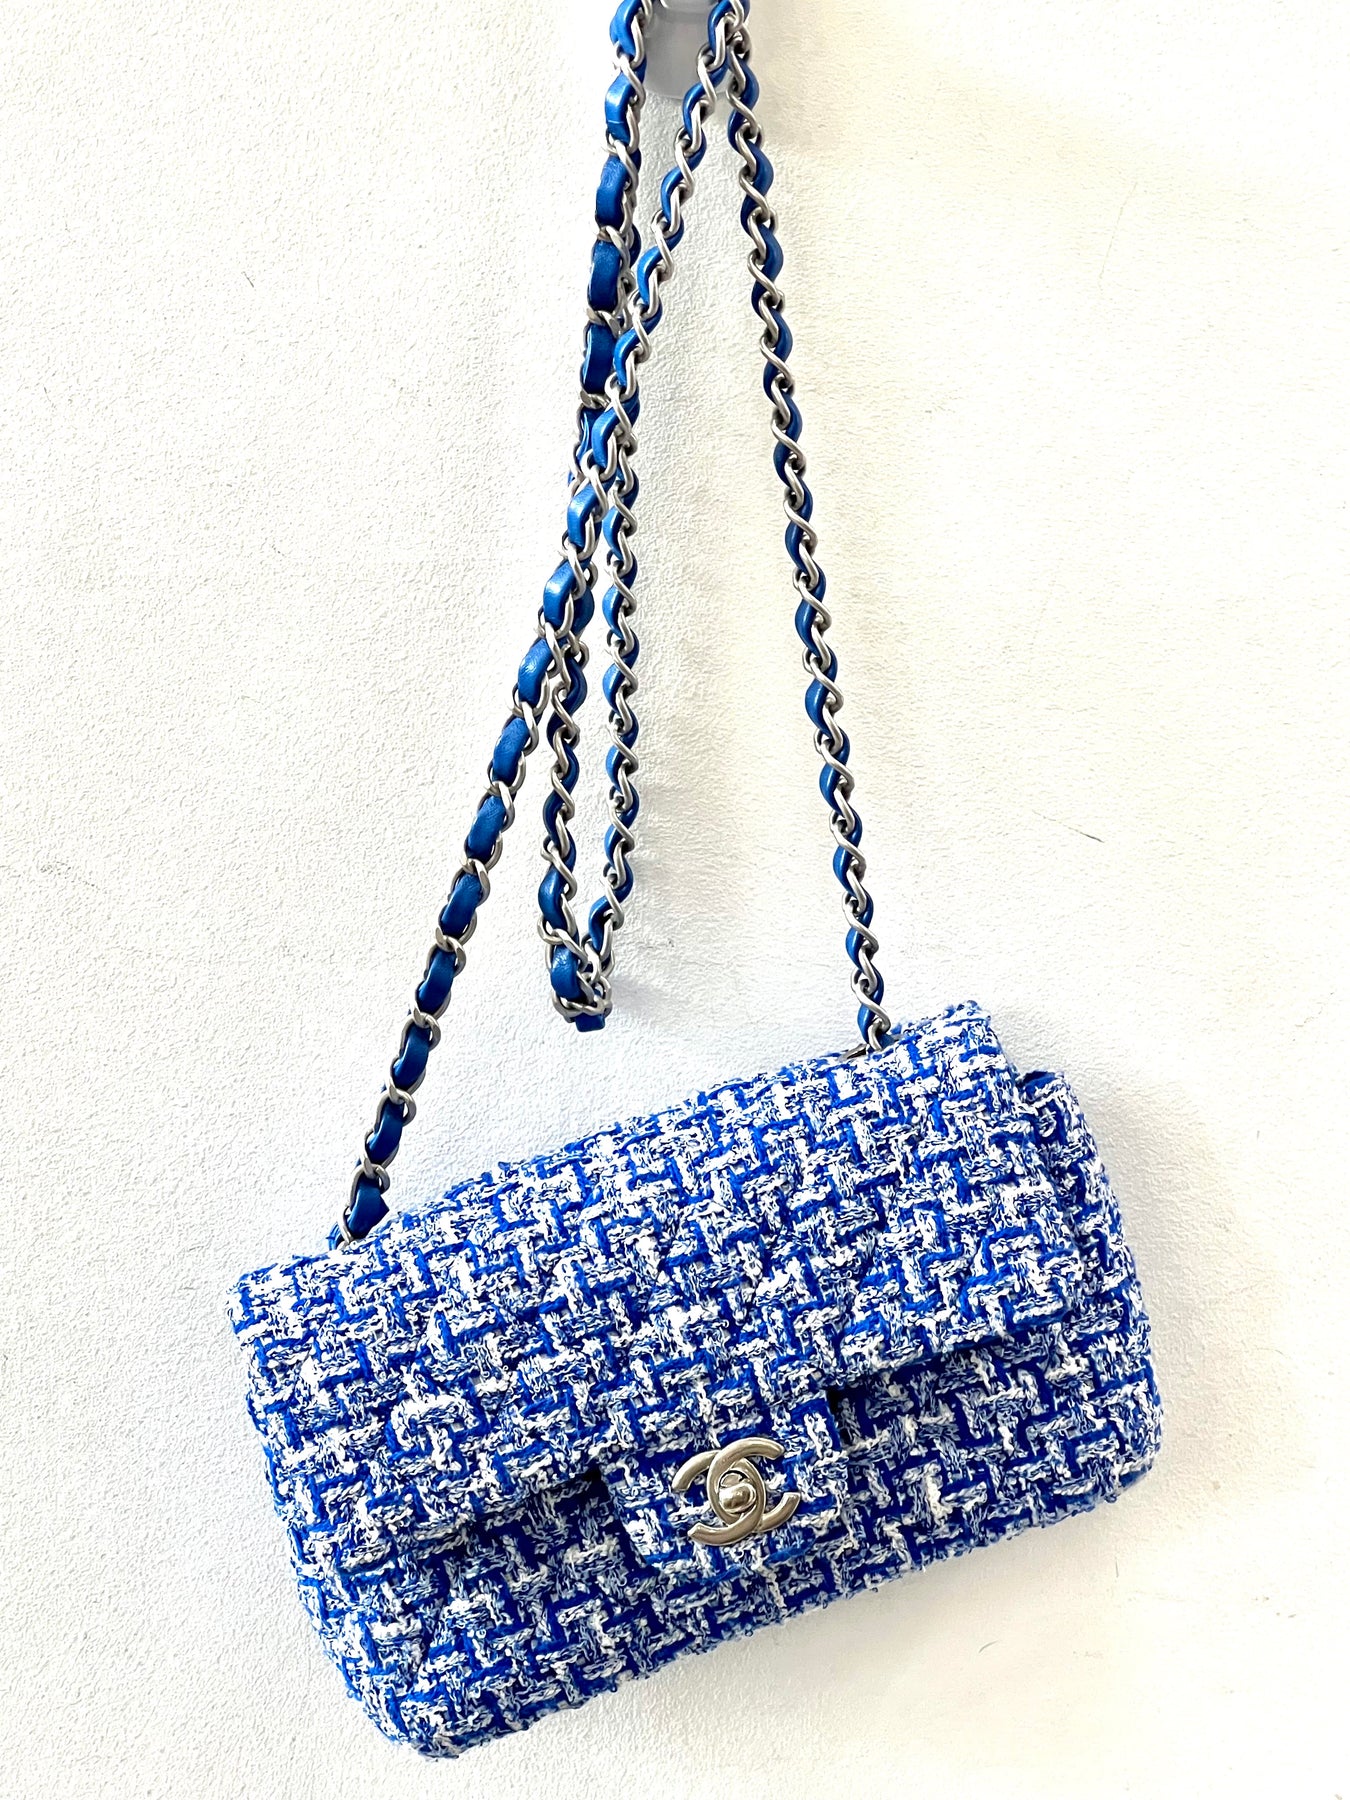 Chanel Tweed Braid Mini Flap Bag - Blue Mini Bags, Handbags - CHA432786